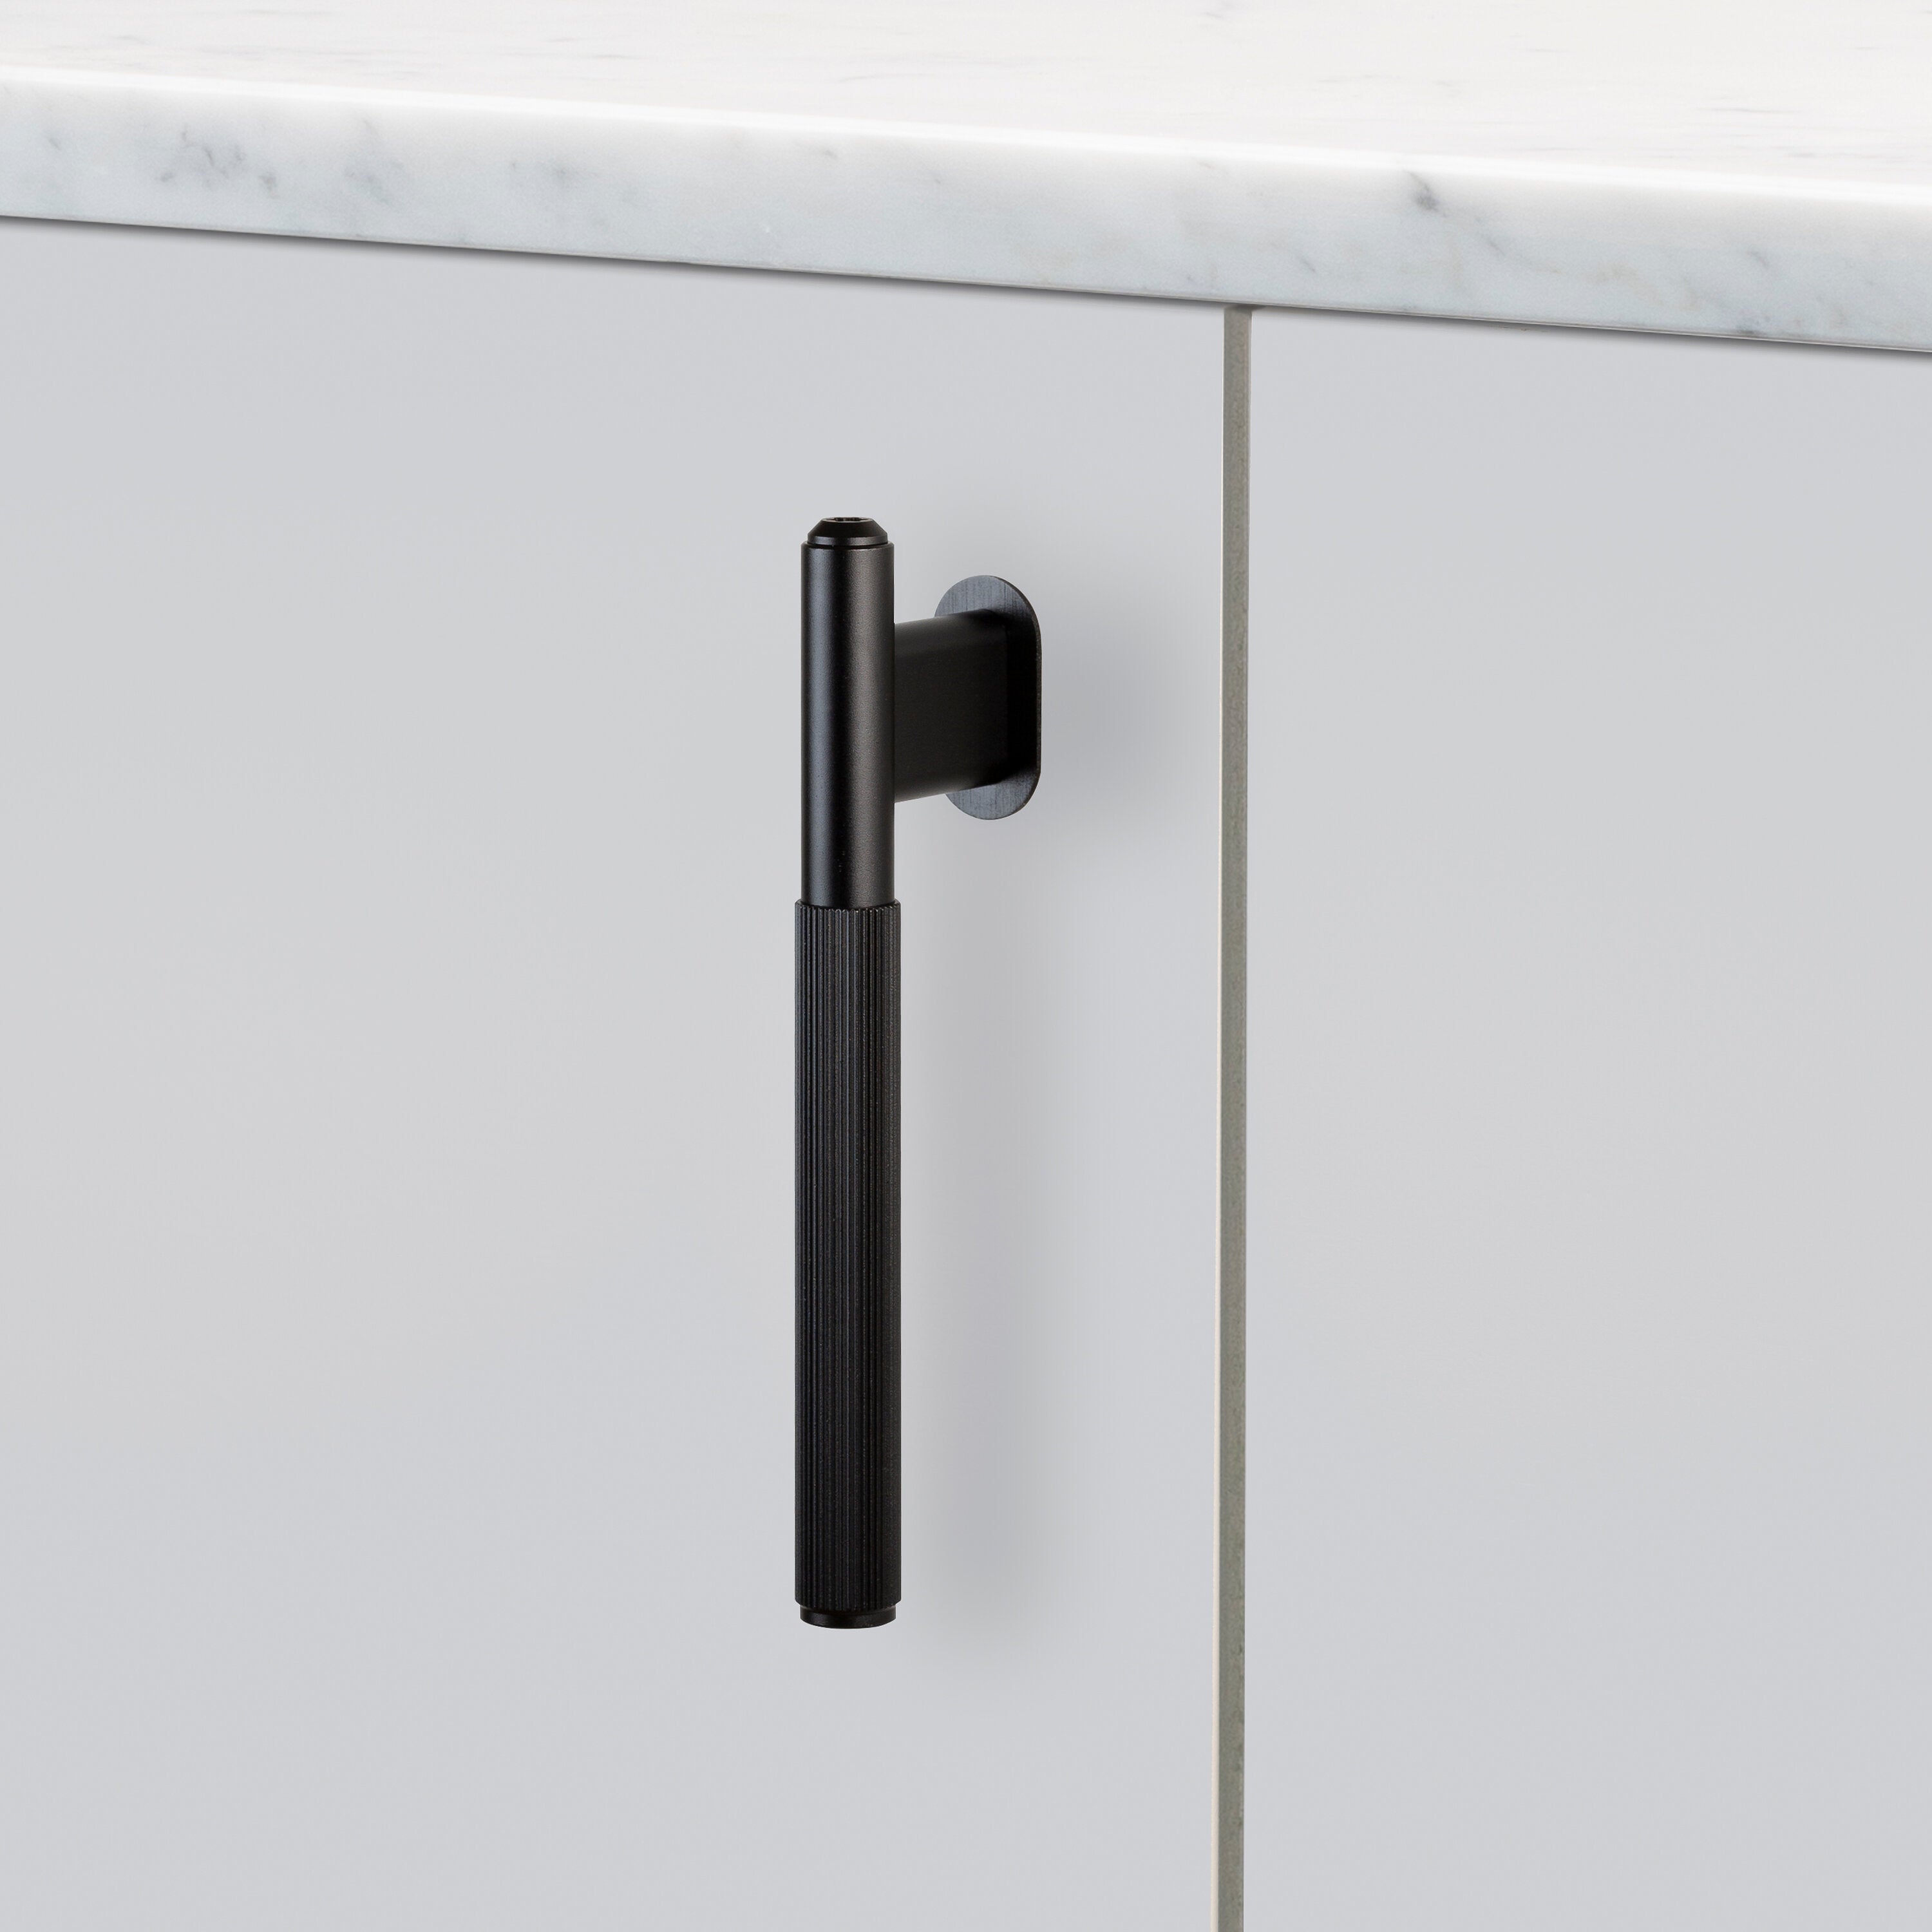 L-bar køkkengreb fra Buster + Punch i sort aluminium med linjeret mønster.